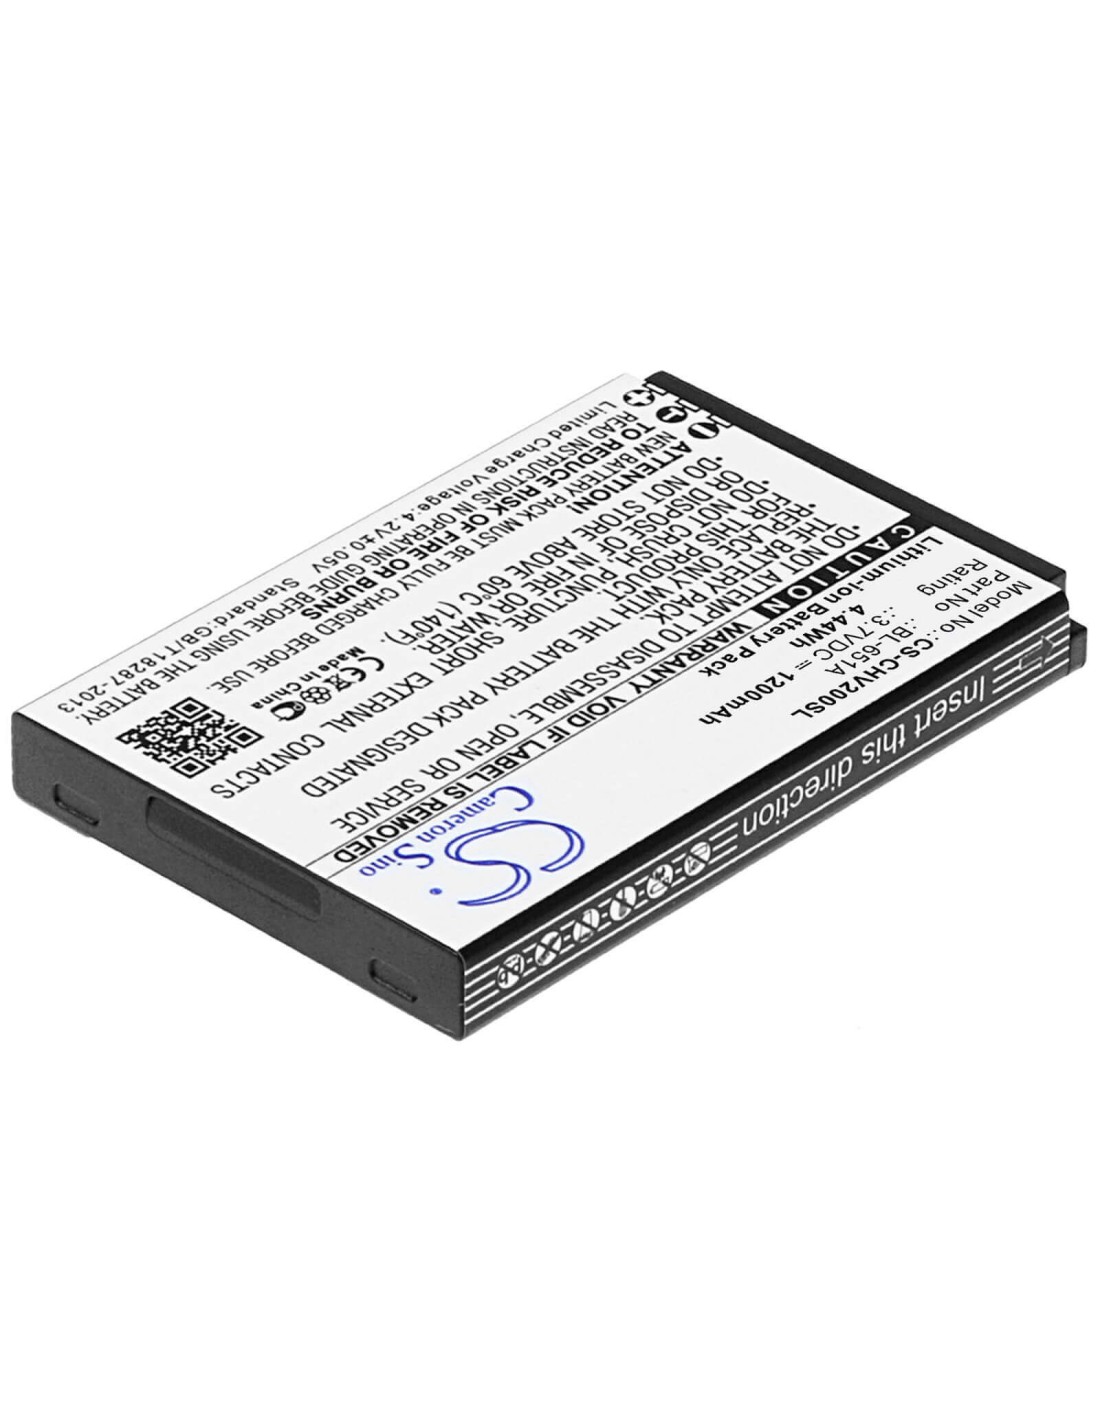 Battery for Crosscall Shark-V2 3.7V, 1500mAh - 5.55Wh